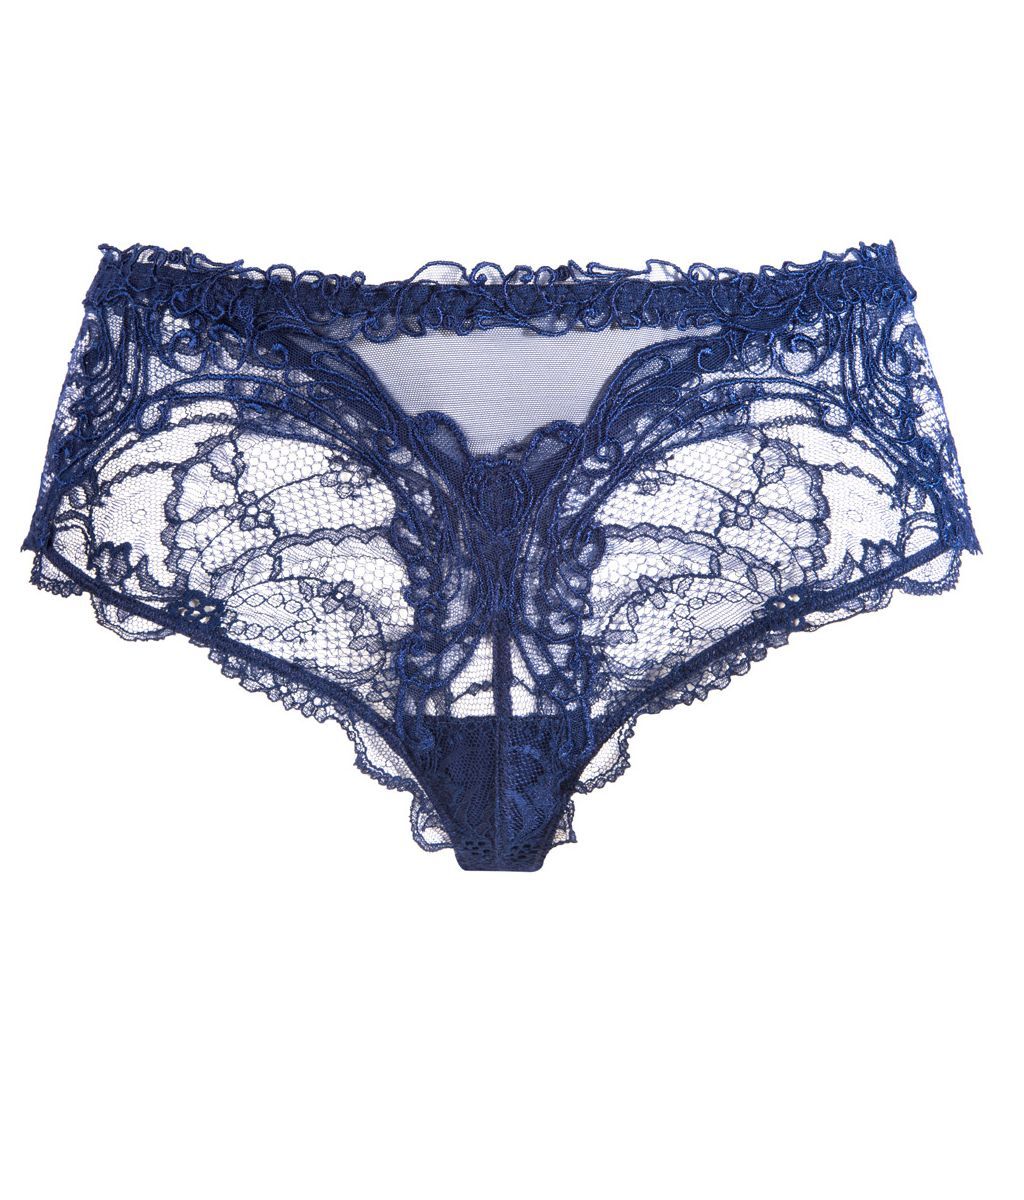 Lise Charmel 'Soir de Venise' (Bleu Venise) Culotte (Shorts) - Sandra Dee - Product Shot - Front